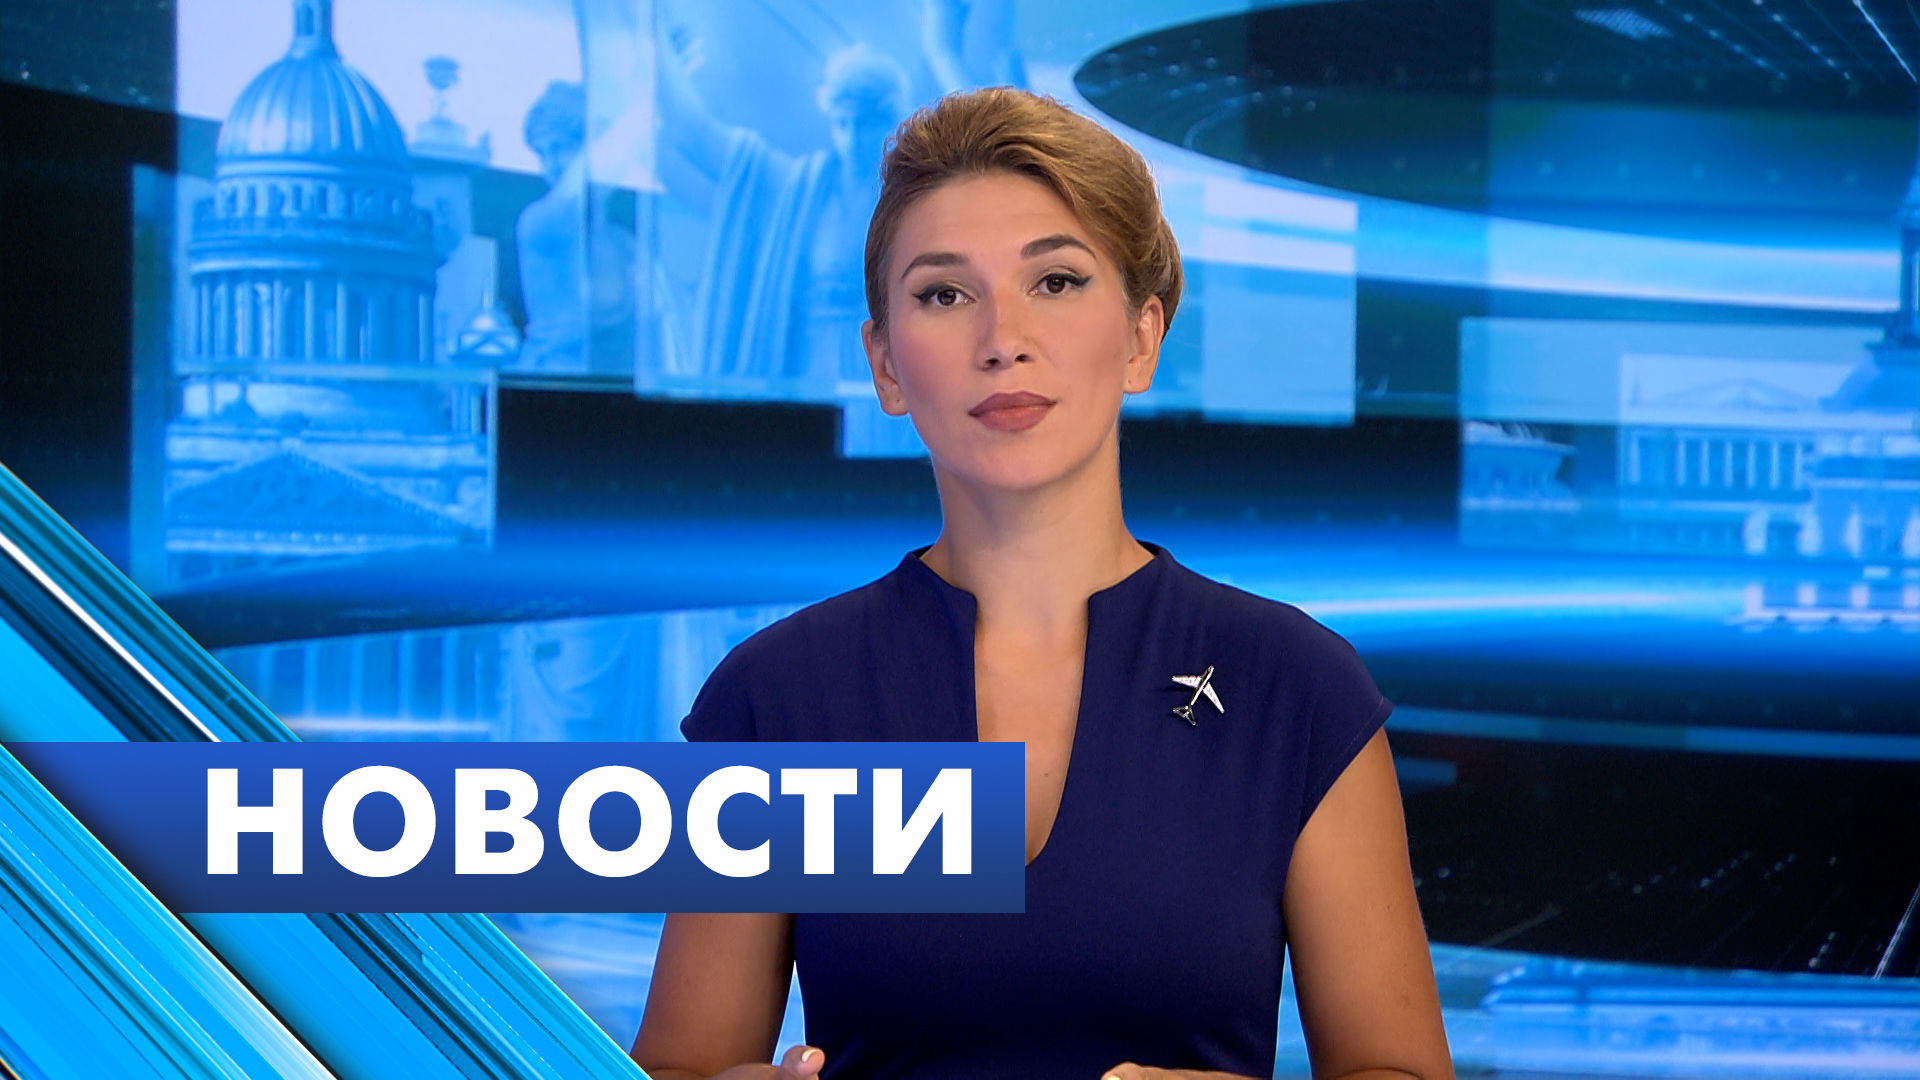 Главные новости Петербурга / 2 августа